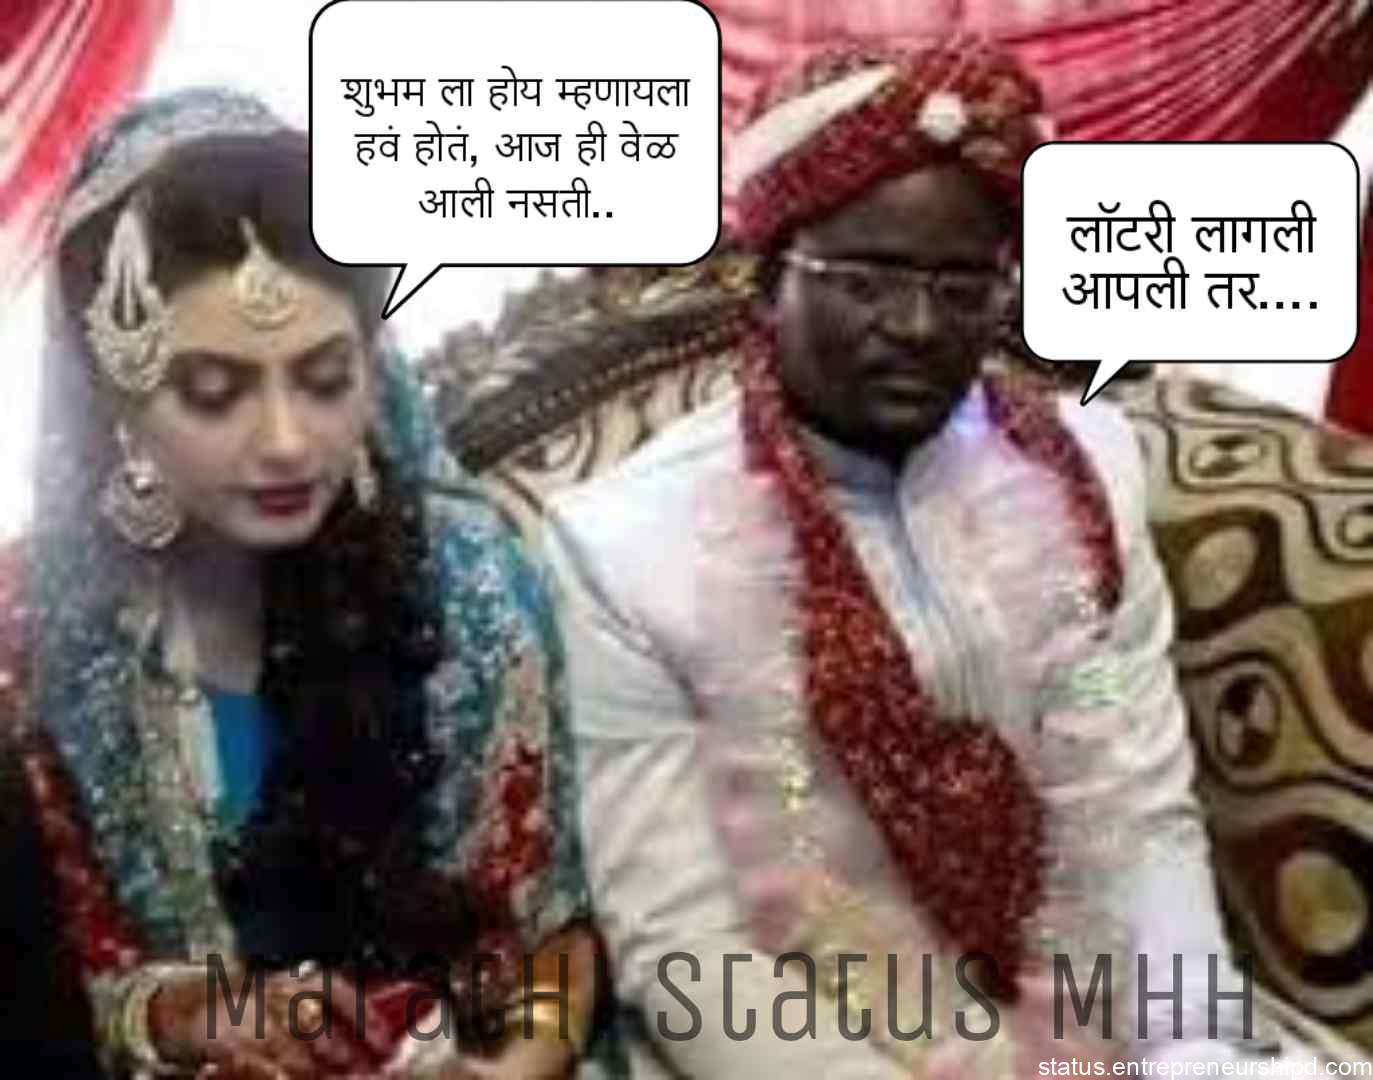 Marathi memes on marriage